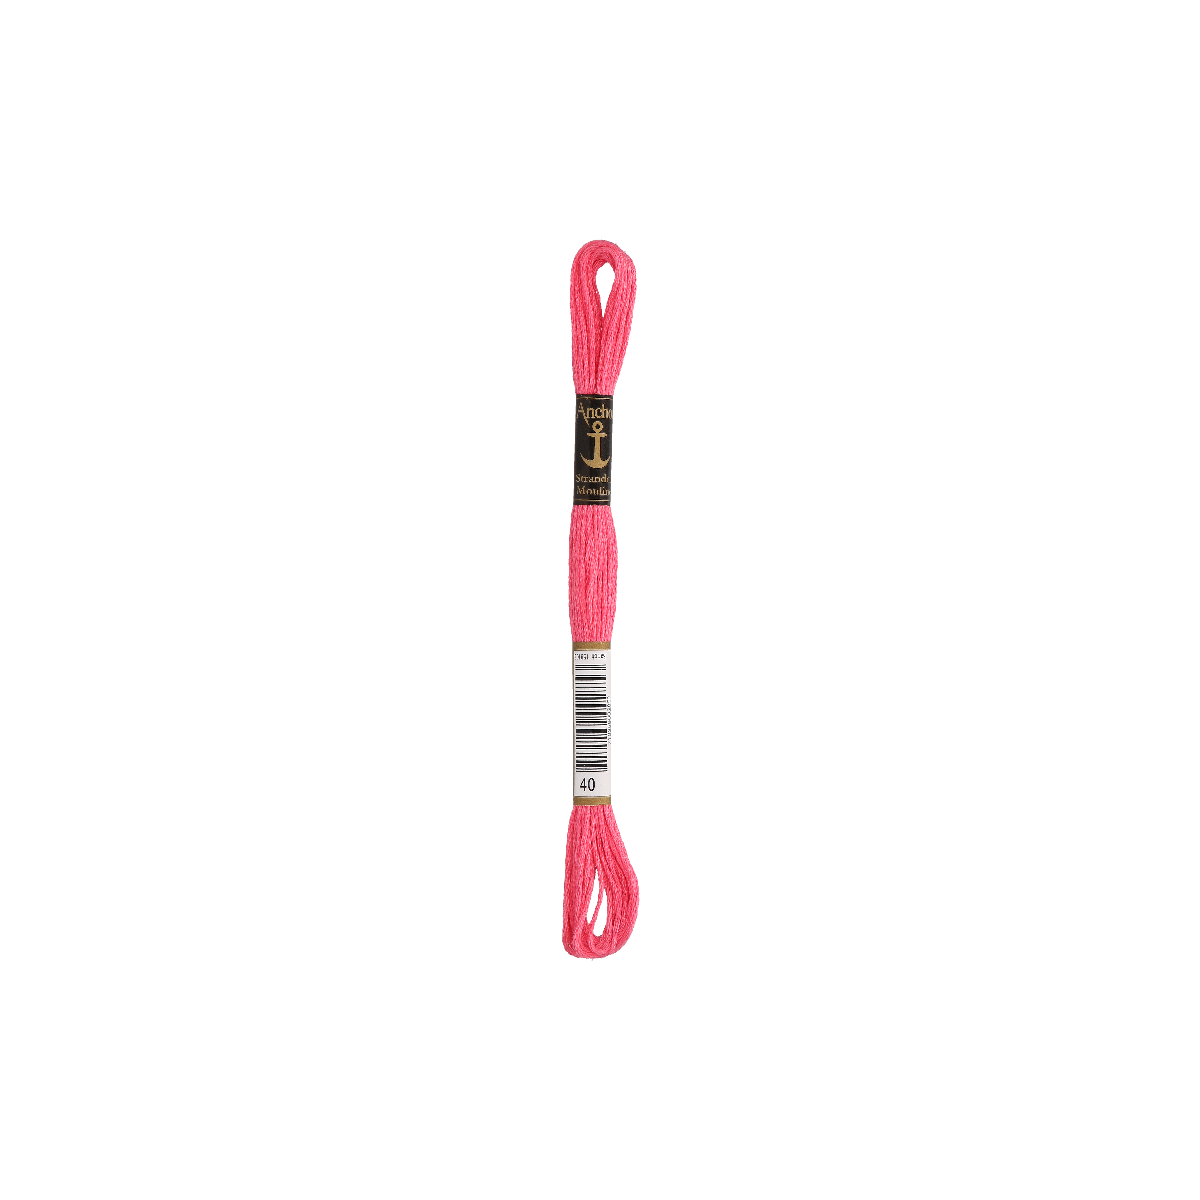 Anchor Sticktwist 8m, pink hell, Baumwolle, Farbe 40,...